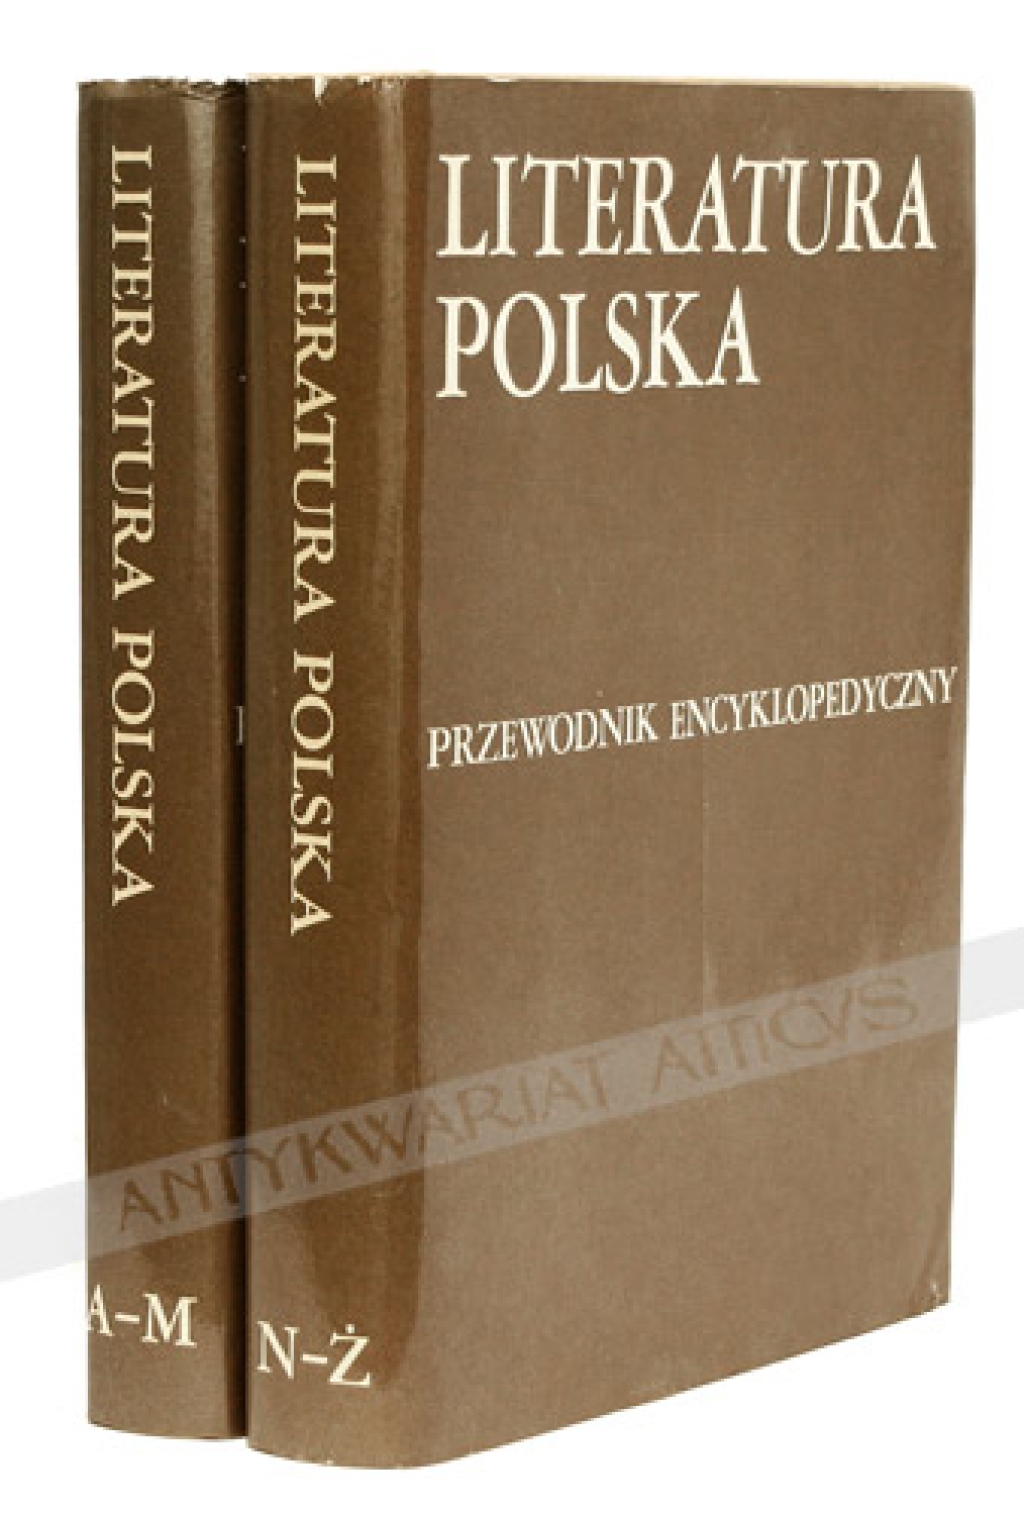 Literatura polska. Przewodnik encyklopedyczny, t. I-II